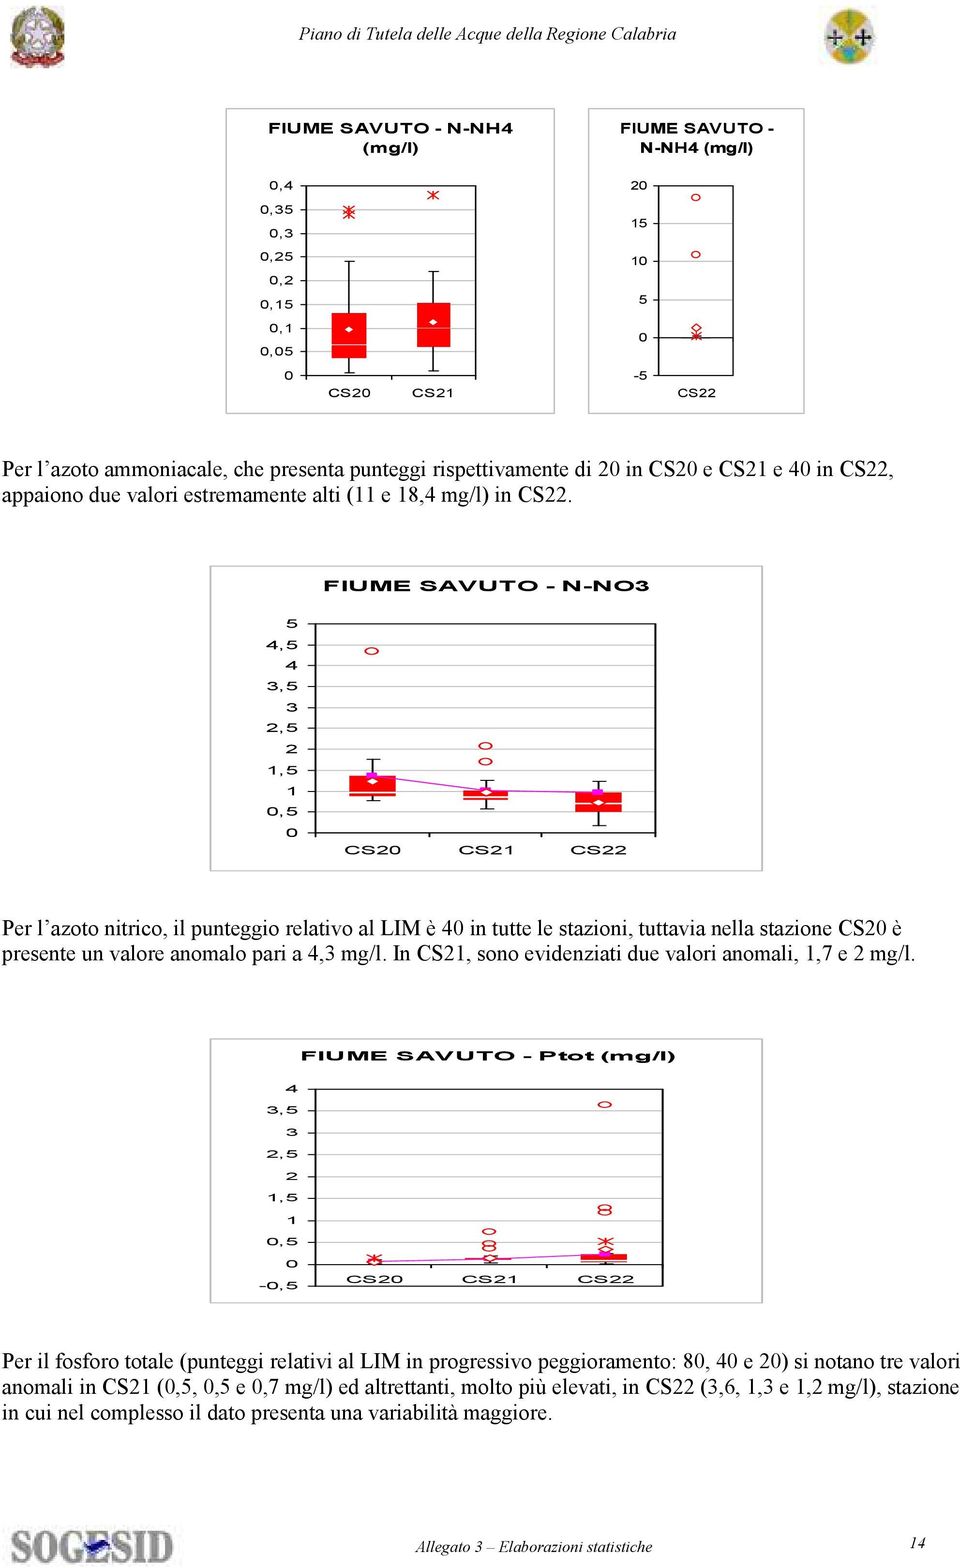 FIUME SAVUTO - N-NO3 4, 4 3, 3,,, CS CS CS Per l azoto nitrico, il punteggio relativo al LIM è 4 in tutte le stazioni, tuttavia nella stazione CS è presente un valore anomalo pari a 4,3 mg/l.